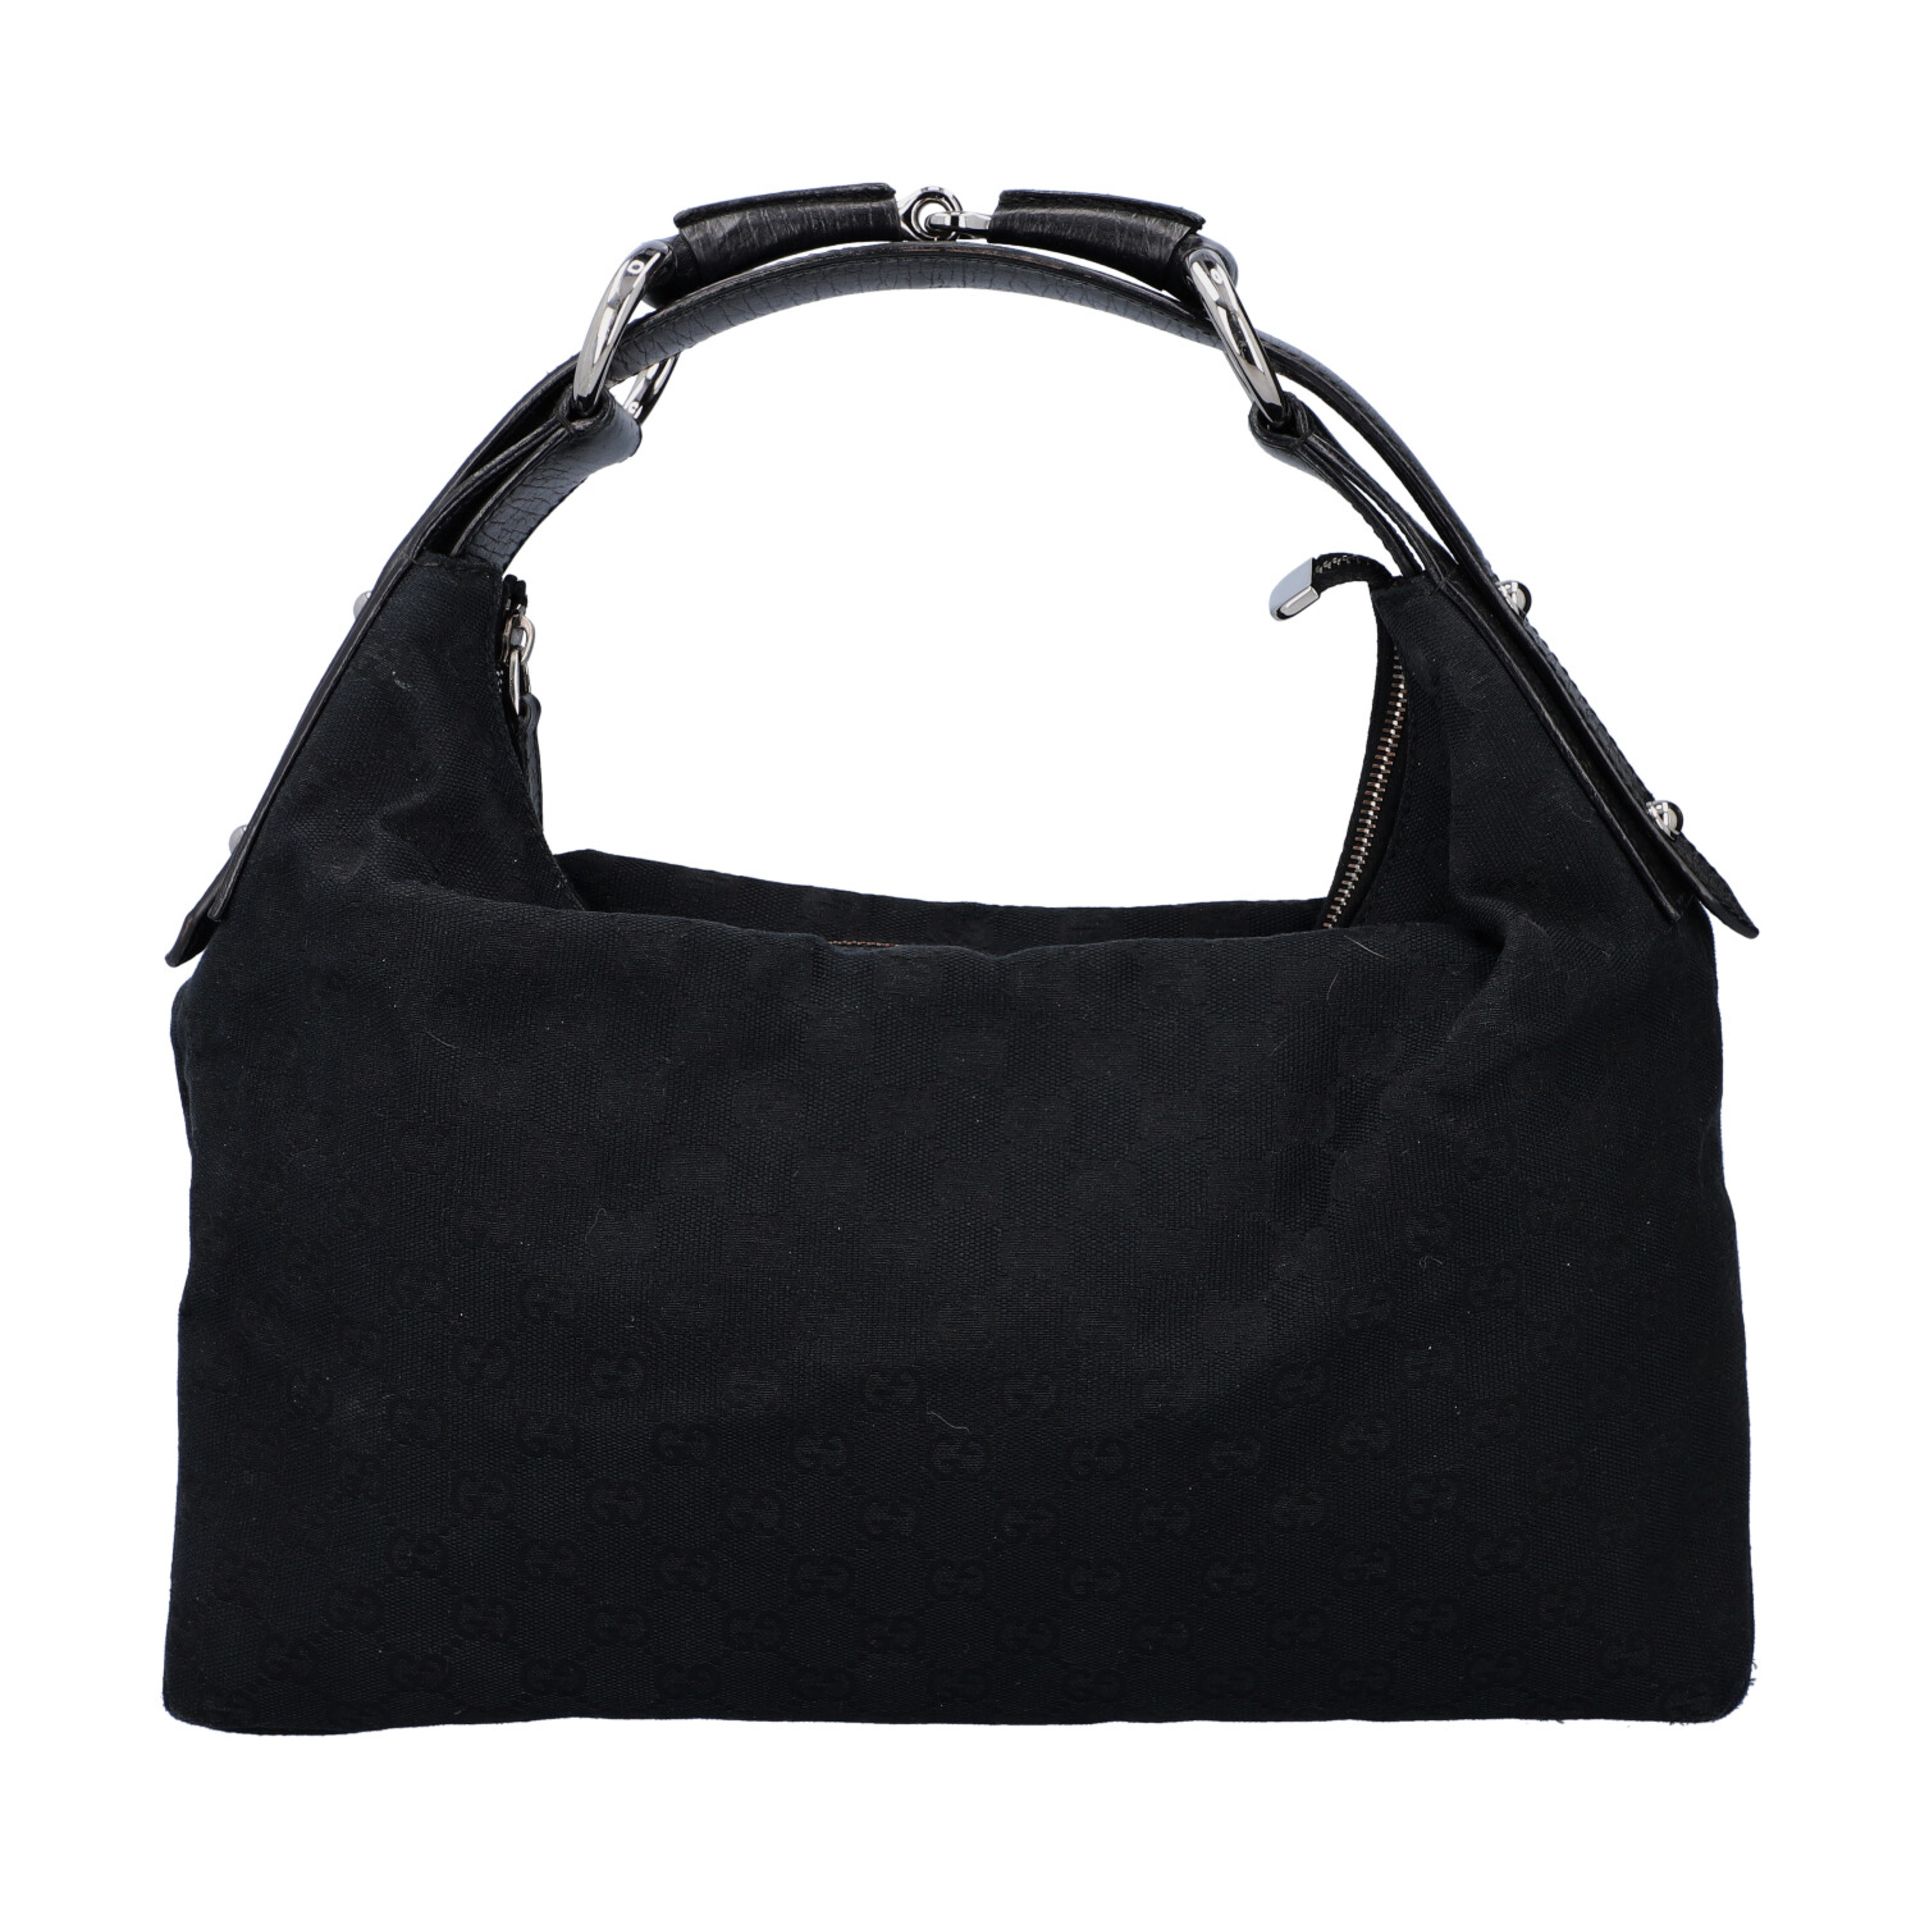 GUCCI Handtasche. Guccissima Design auf schwarzem Textil mit silberfarbener Hardware, - Bild 4 aus 8